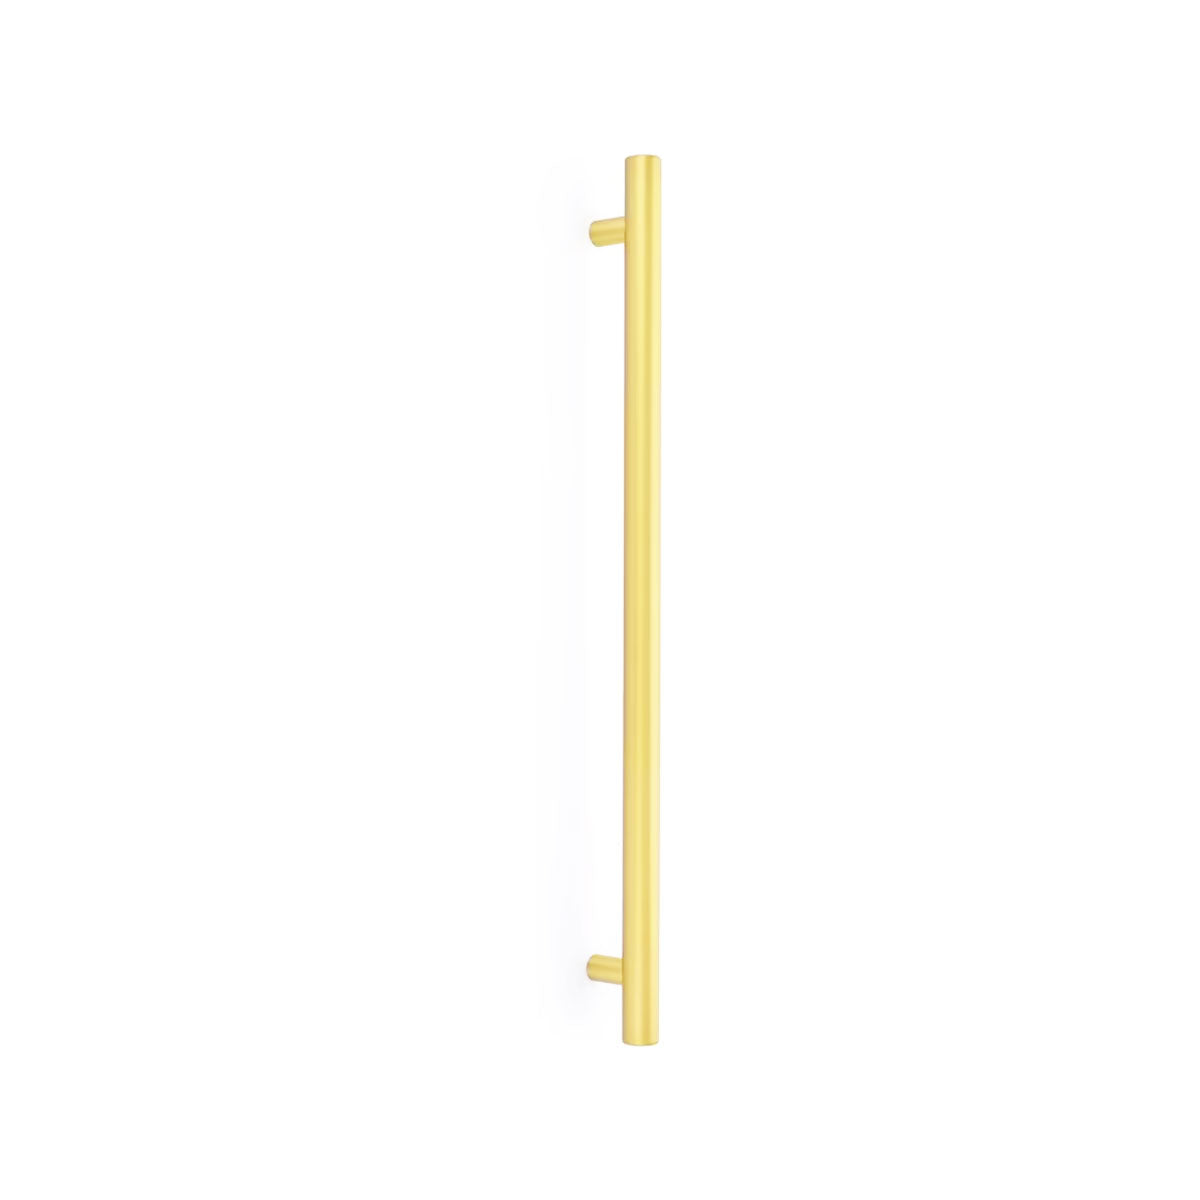 86352US3NL - Brass Bar Appliance Pull - 18" - Unlacquered Brass